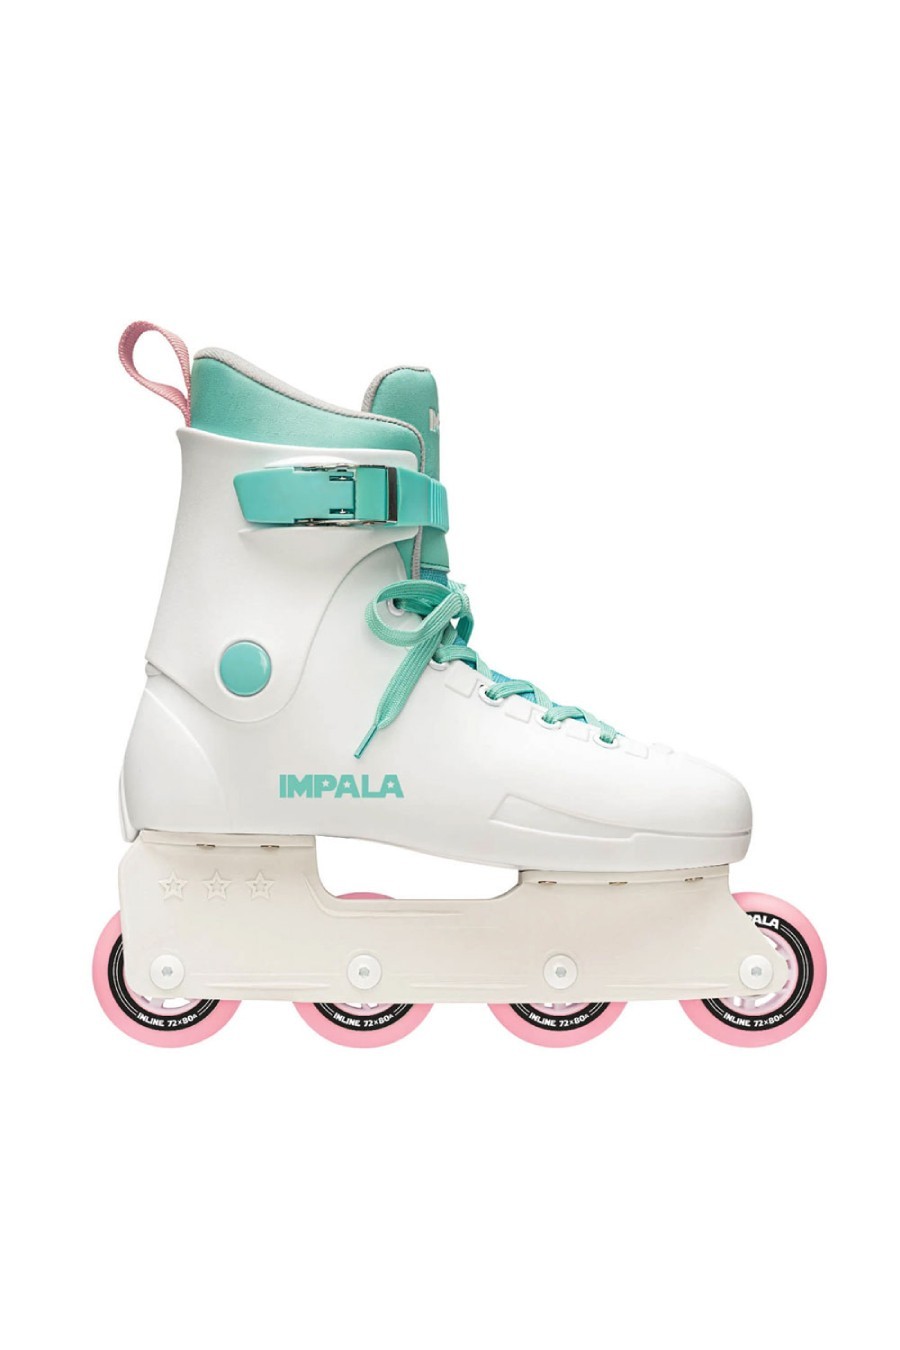 IMPALA In Line Skates LIGHTSPEED INNLINE SKATES WHITE - WHITE-IMP47174-122-WHITE 57927